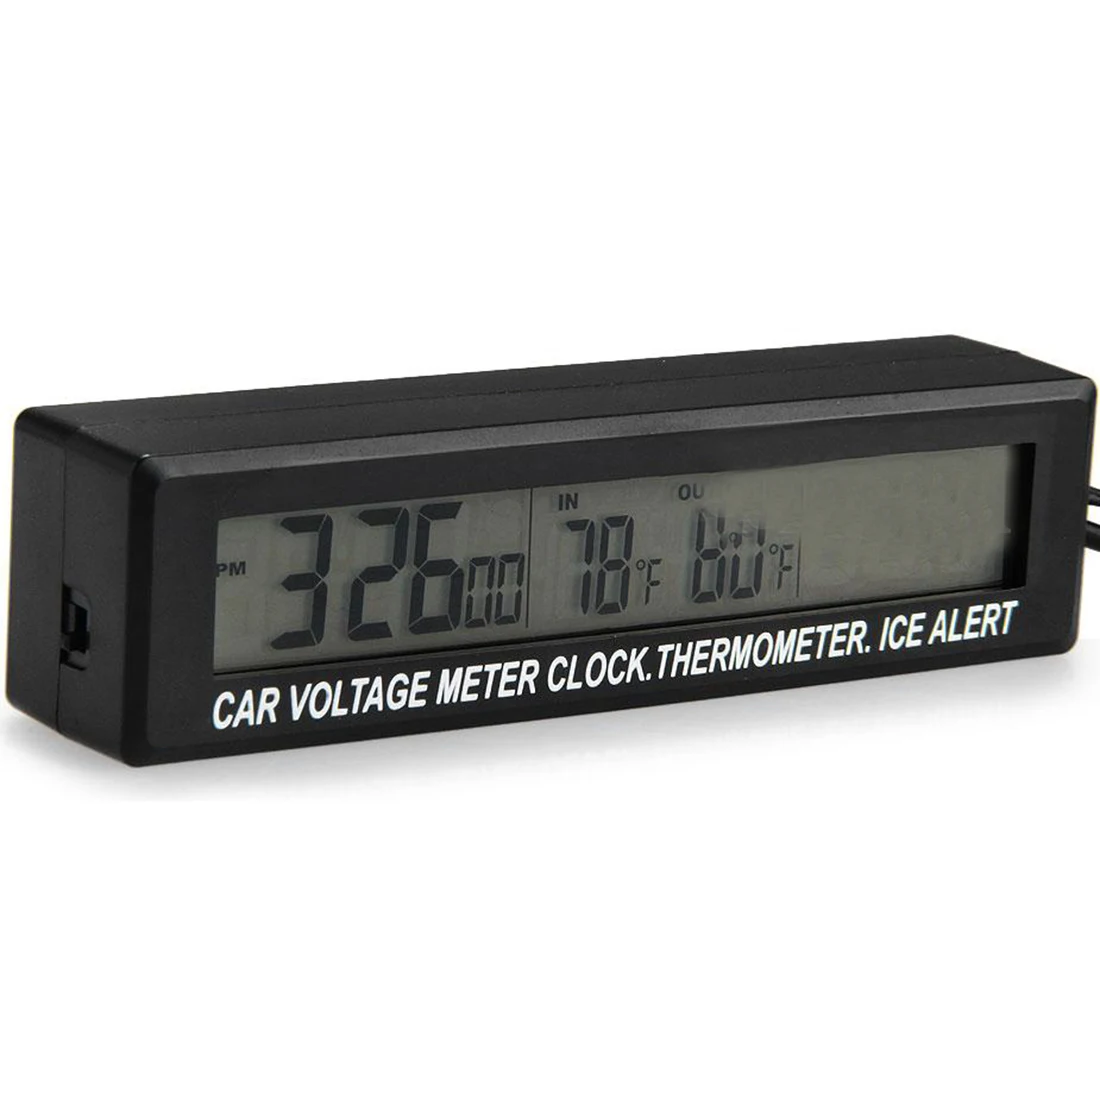 ЖК-дисплей батарея напряжение температура монитор метр 3 в 1 Авто прочный цифровой автомобиль часы термометр